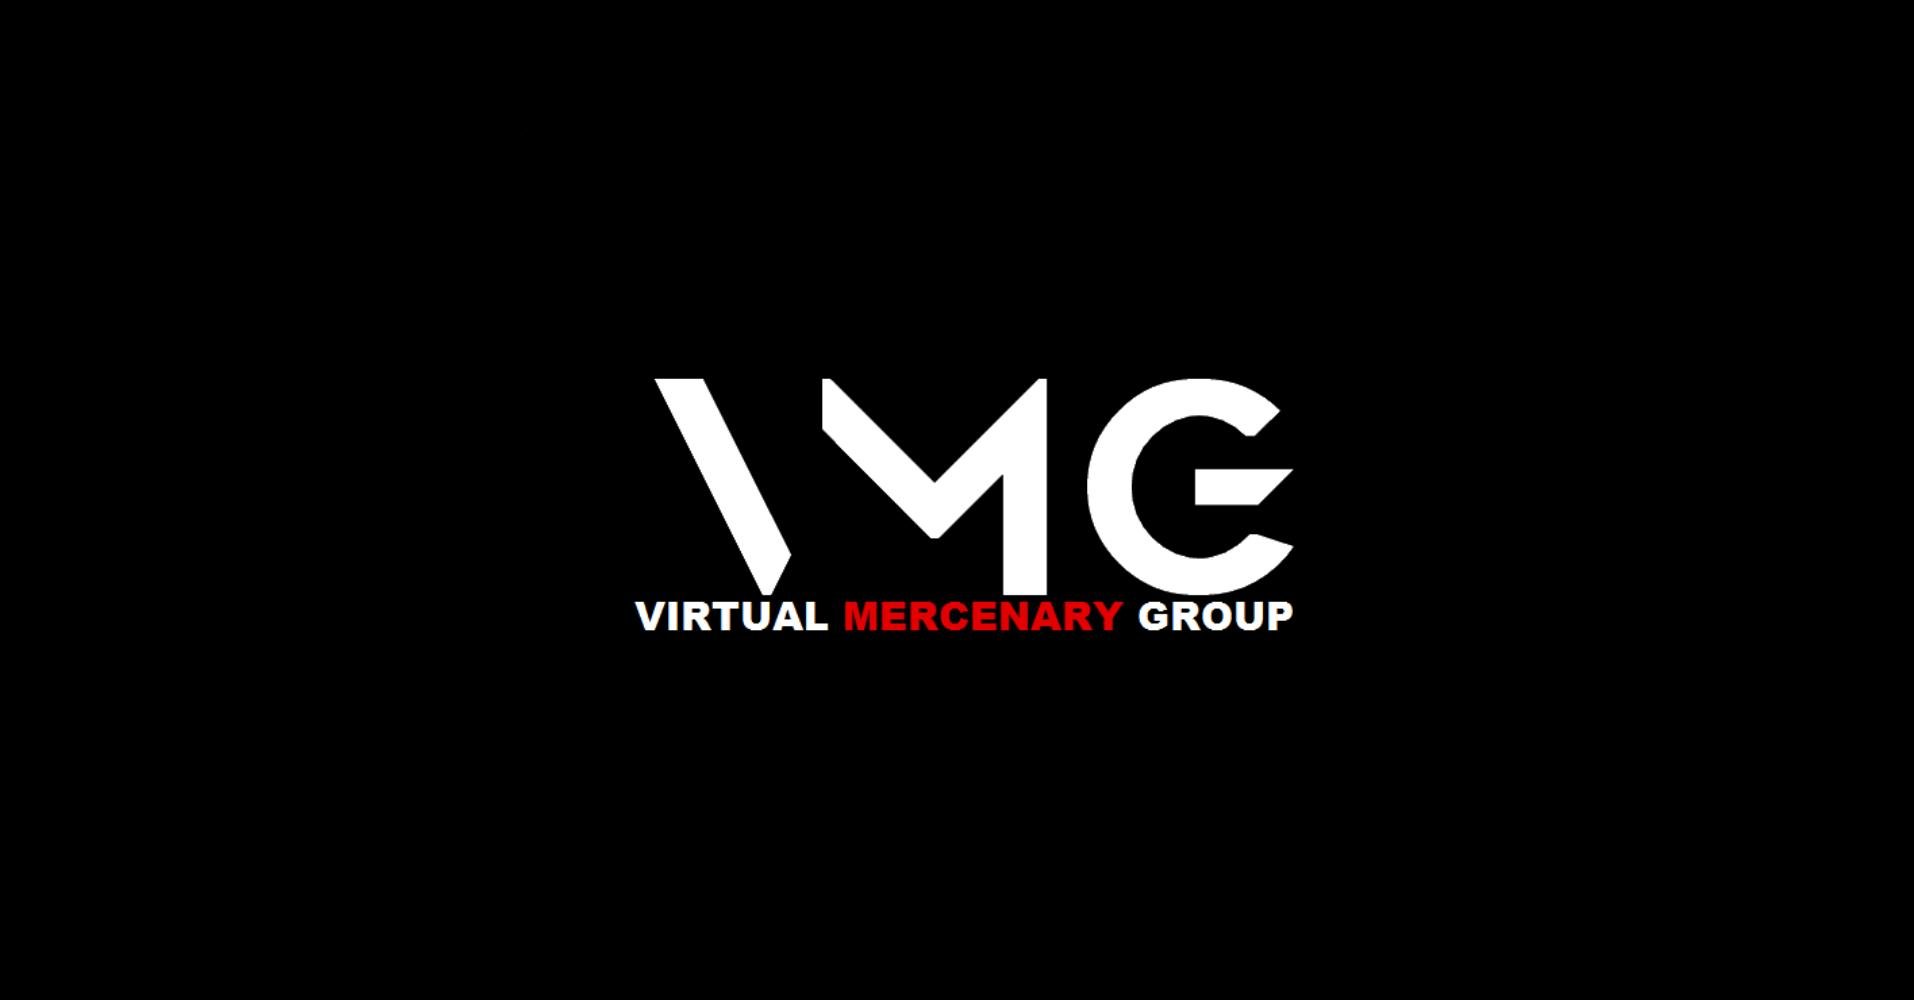 “表”から爪弾かれた者達が己の飽くなき欲望を満たすべく、あらゆる悪逆を為す傭兵集団“Virtual Mercenary Group”(ヴァーチャル マーセナリー グループ)　

隔週 日曜日 ロールプレイ酒場 Rad Neighbor も稼働しております。
#VMG_VRC